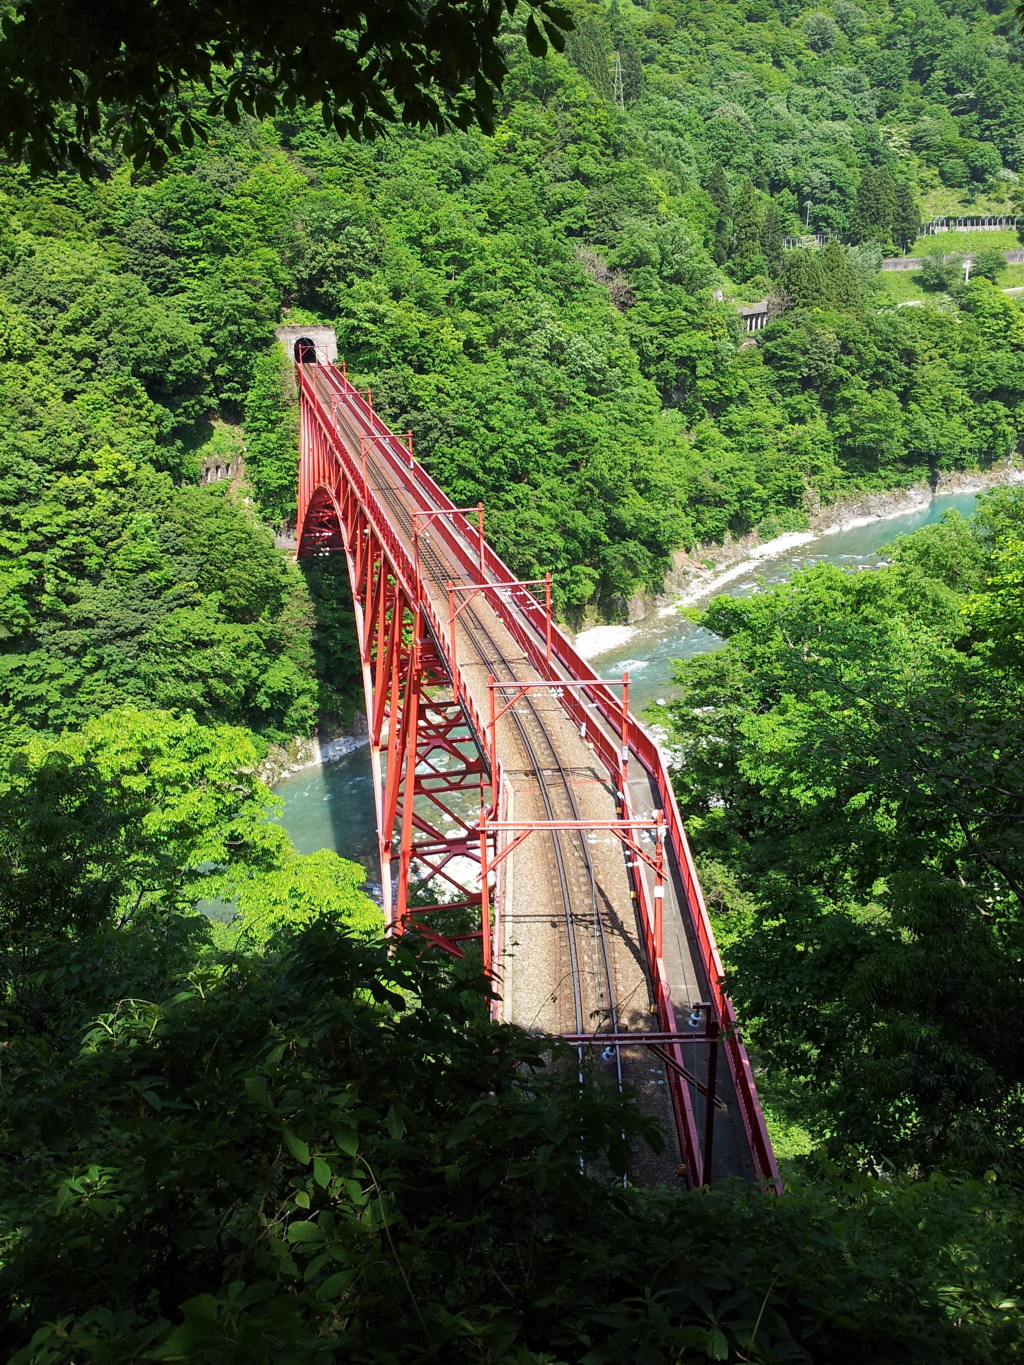 2017/05/20_やまびこ展望台から新山彦橋を望む